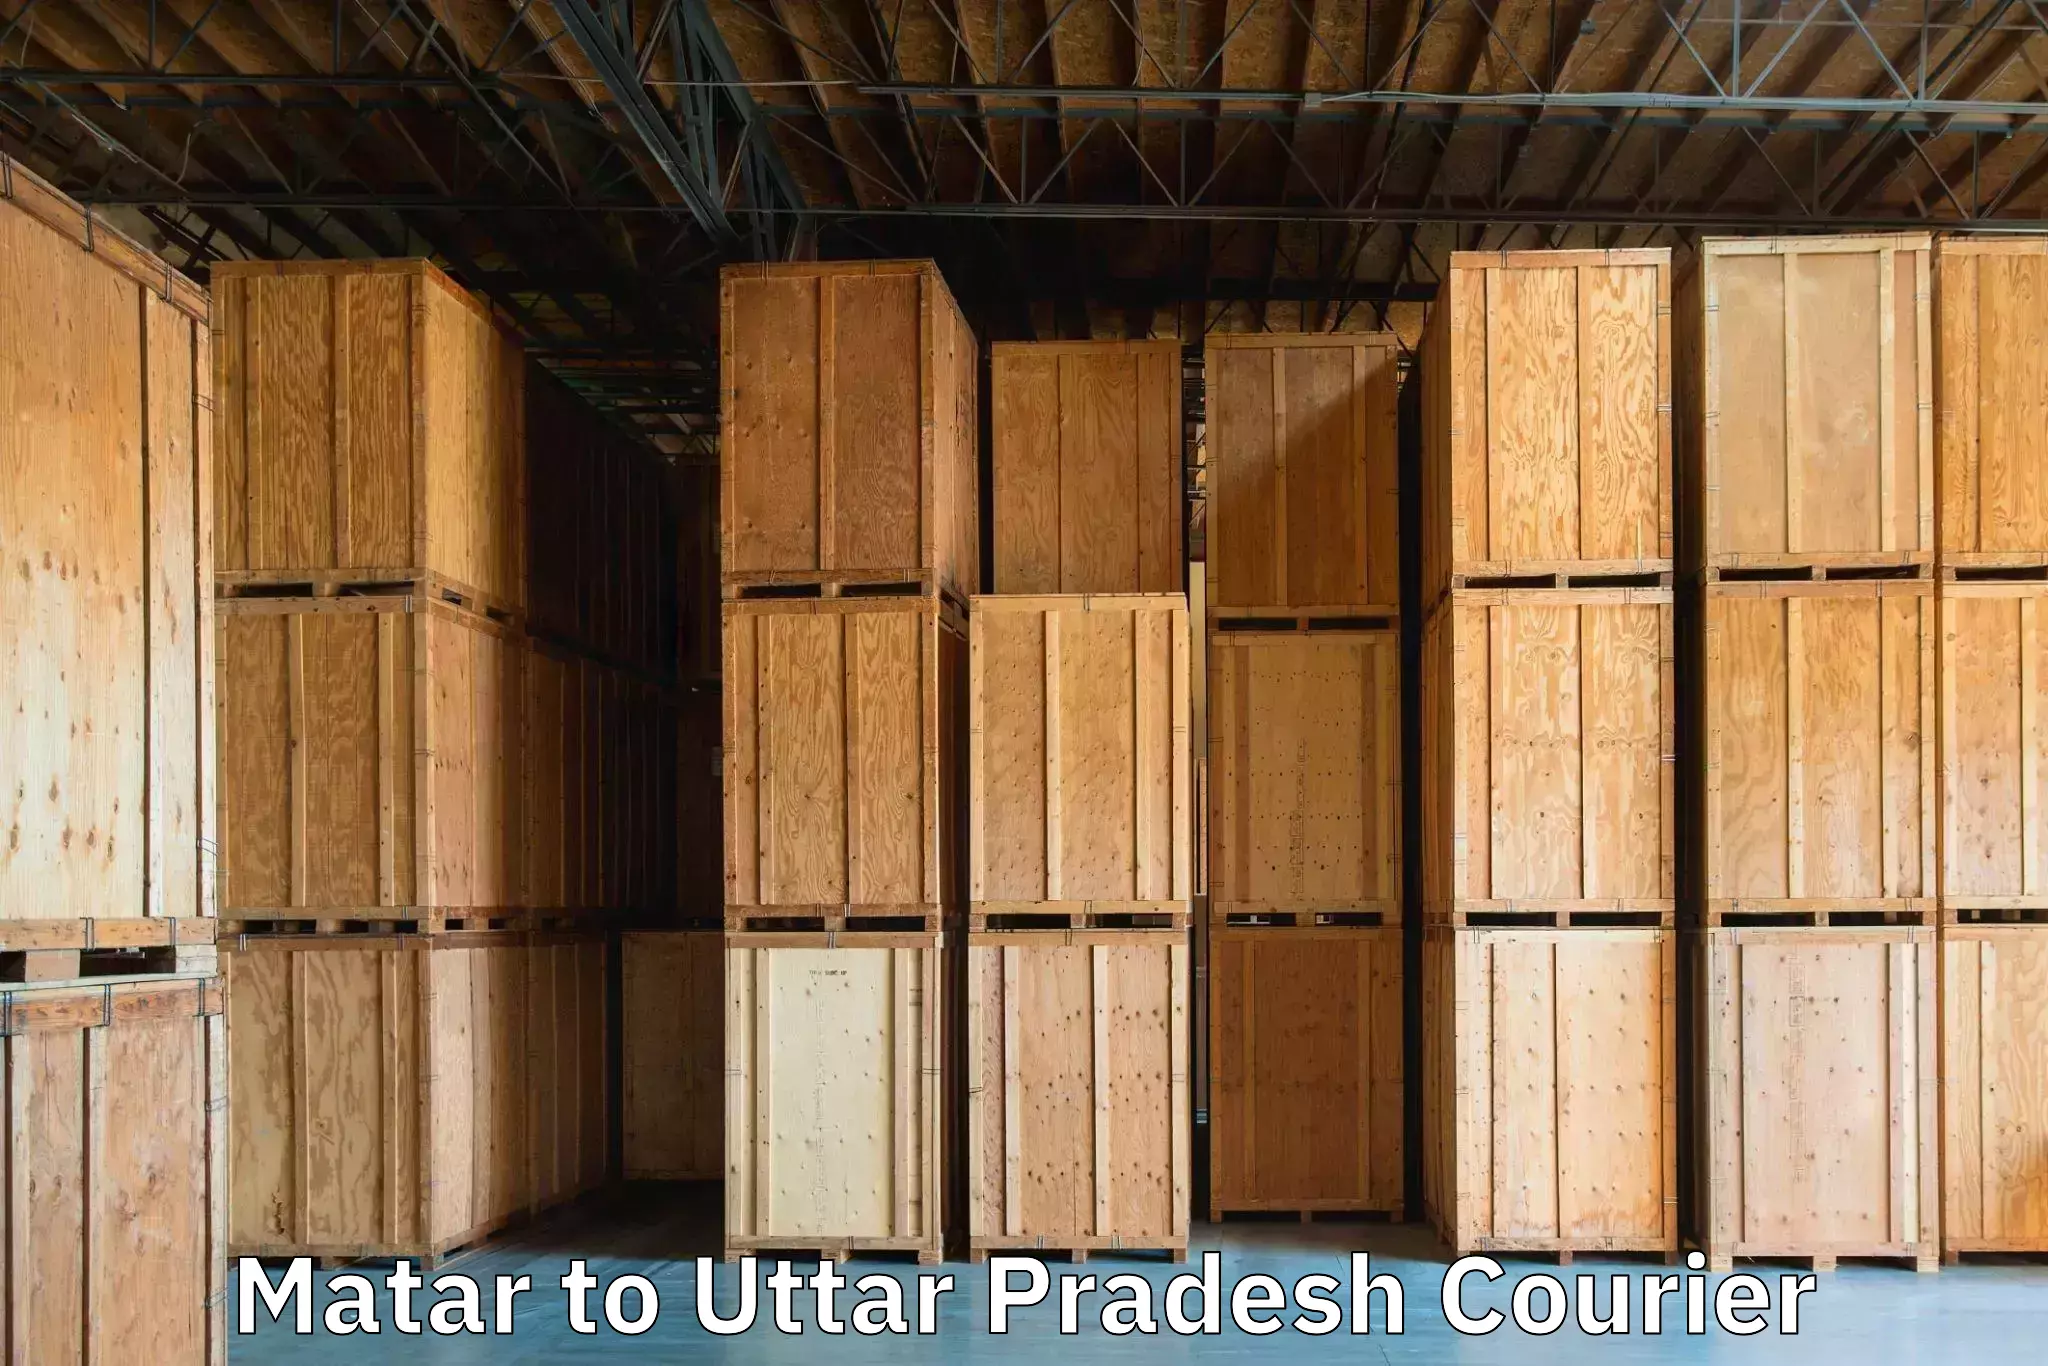 Trackable baggage shipping in Matar to Banaras Hindu University Varanasi